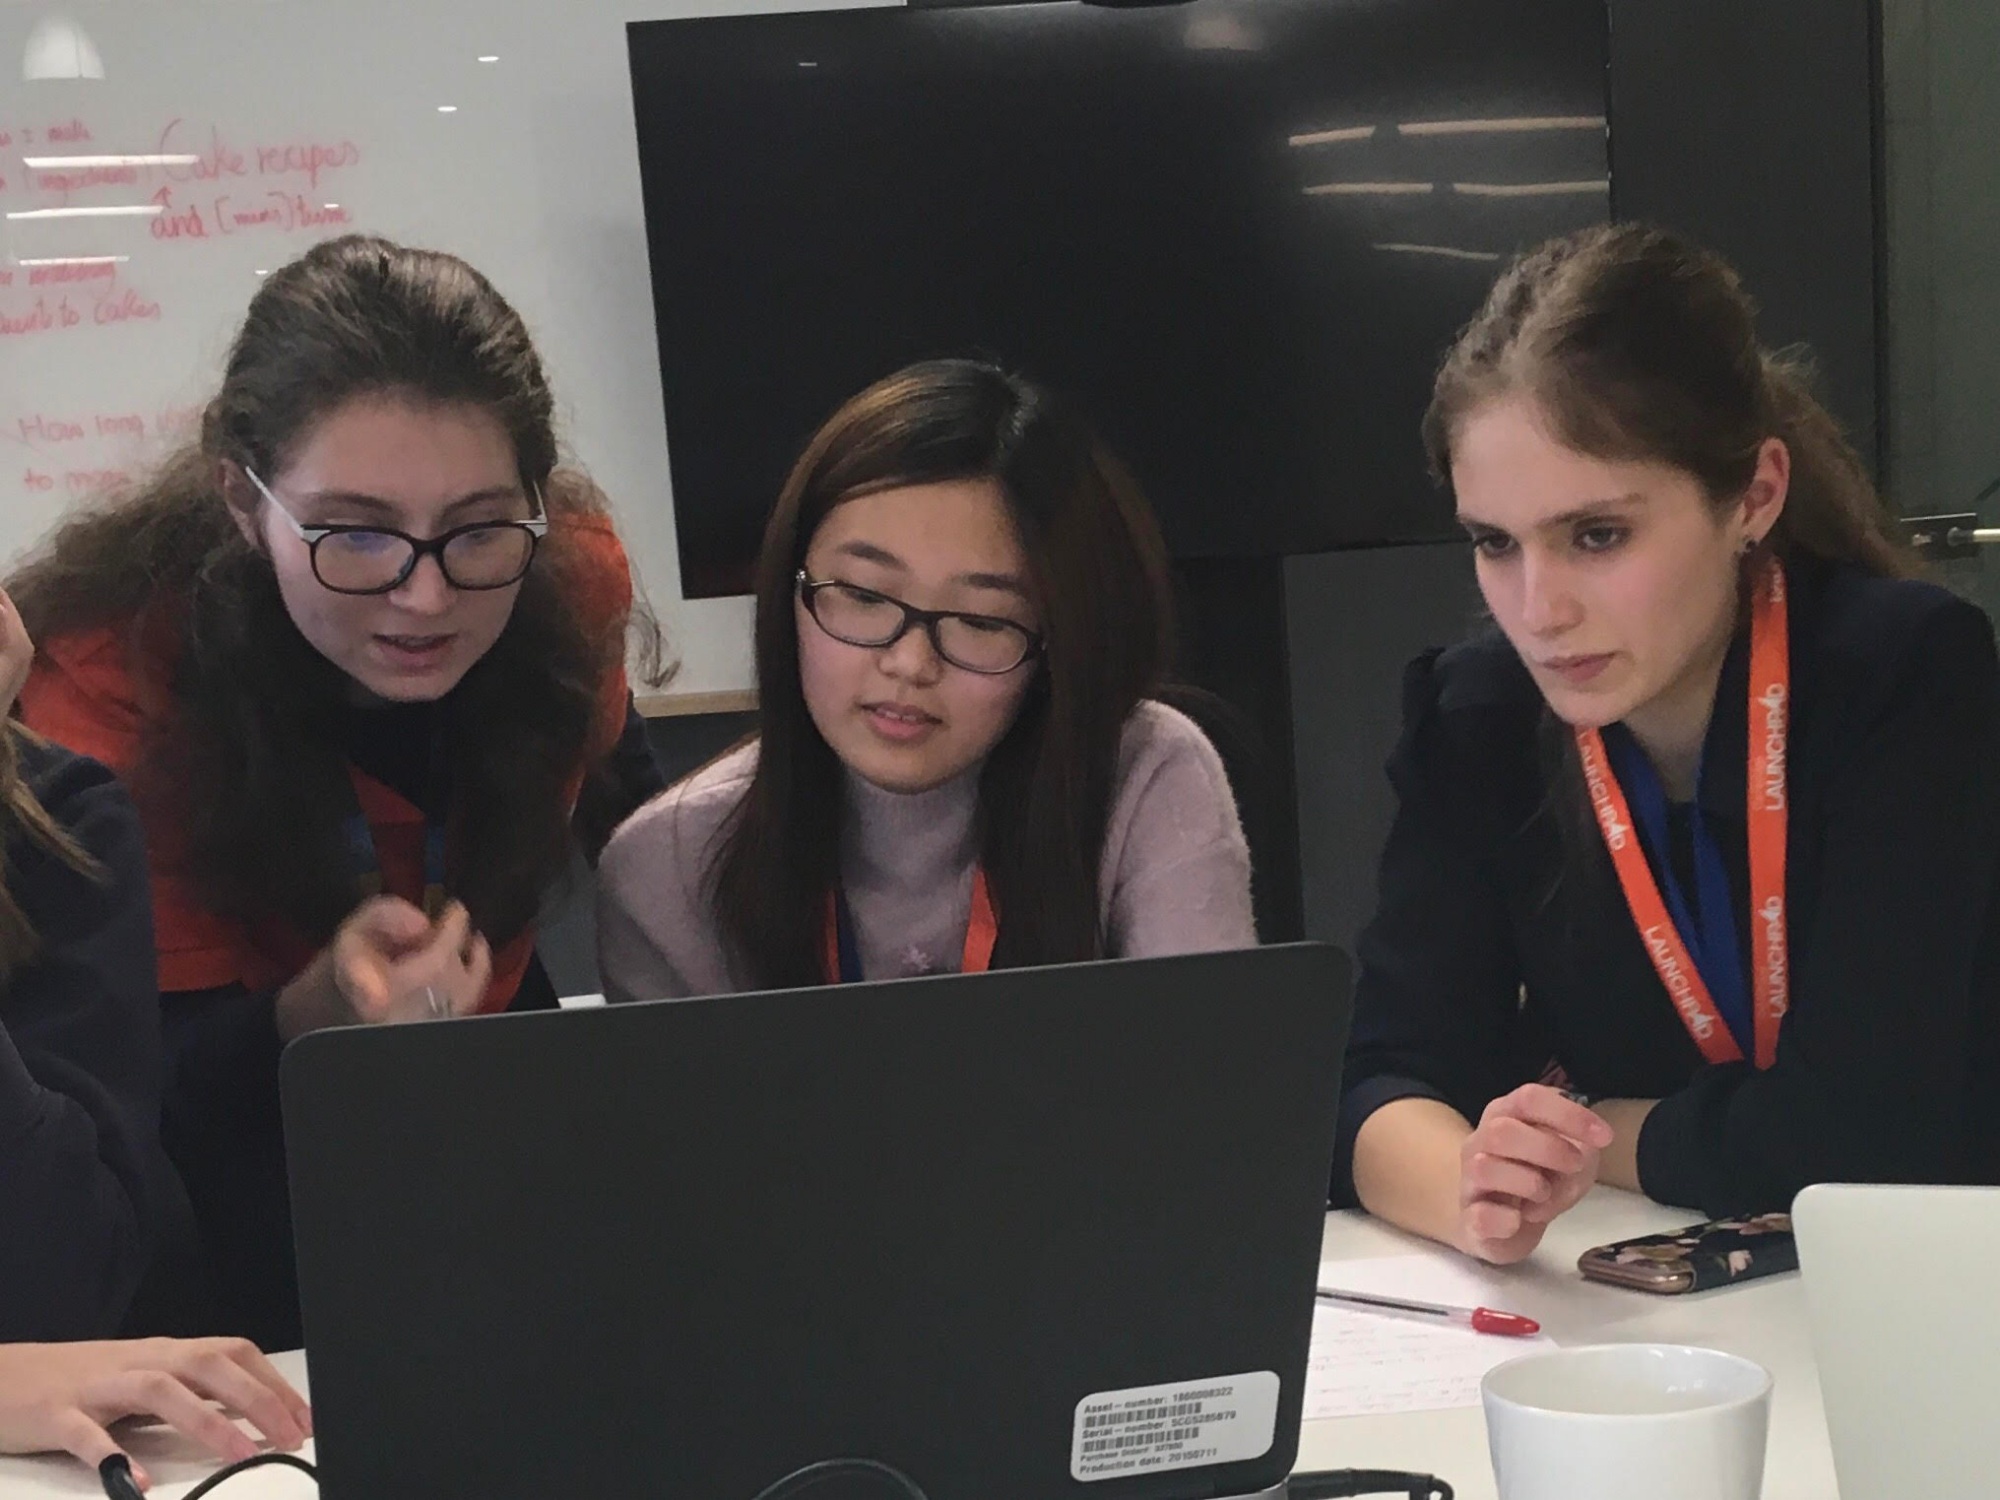 Students look at a computer at Amazon